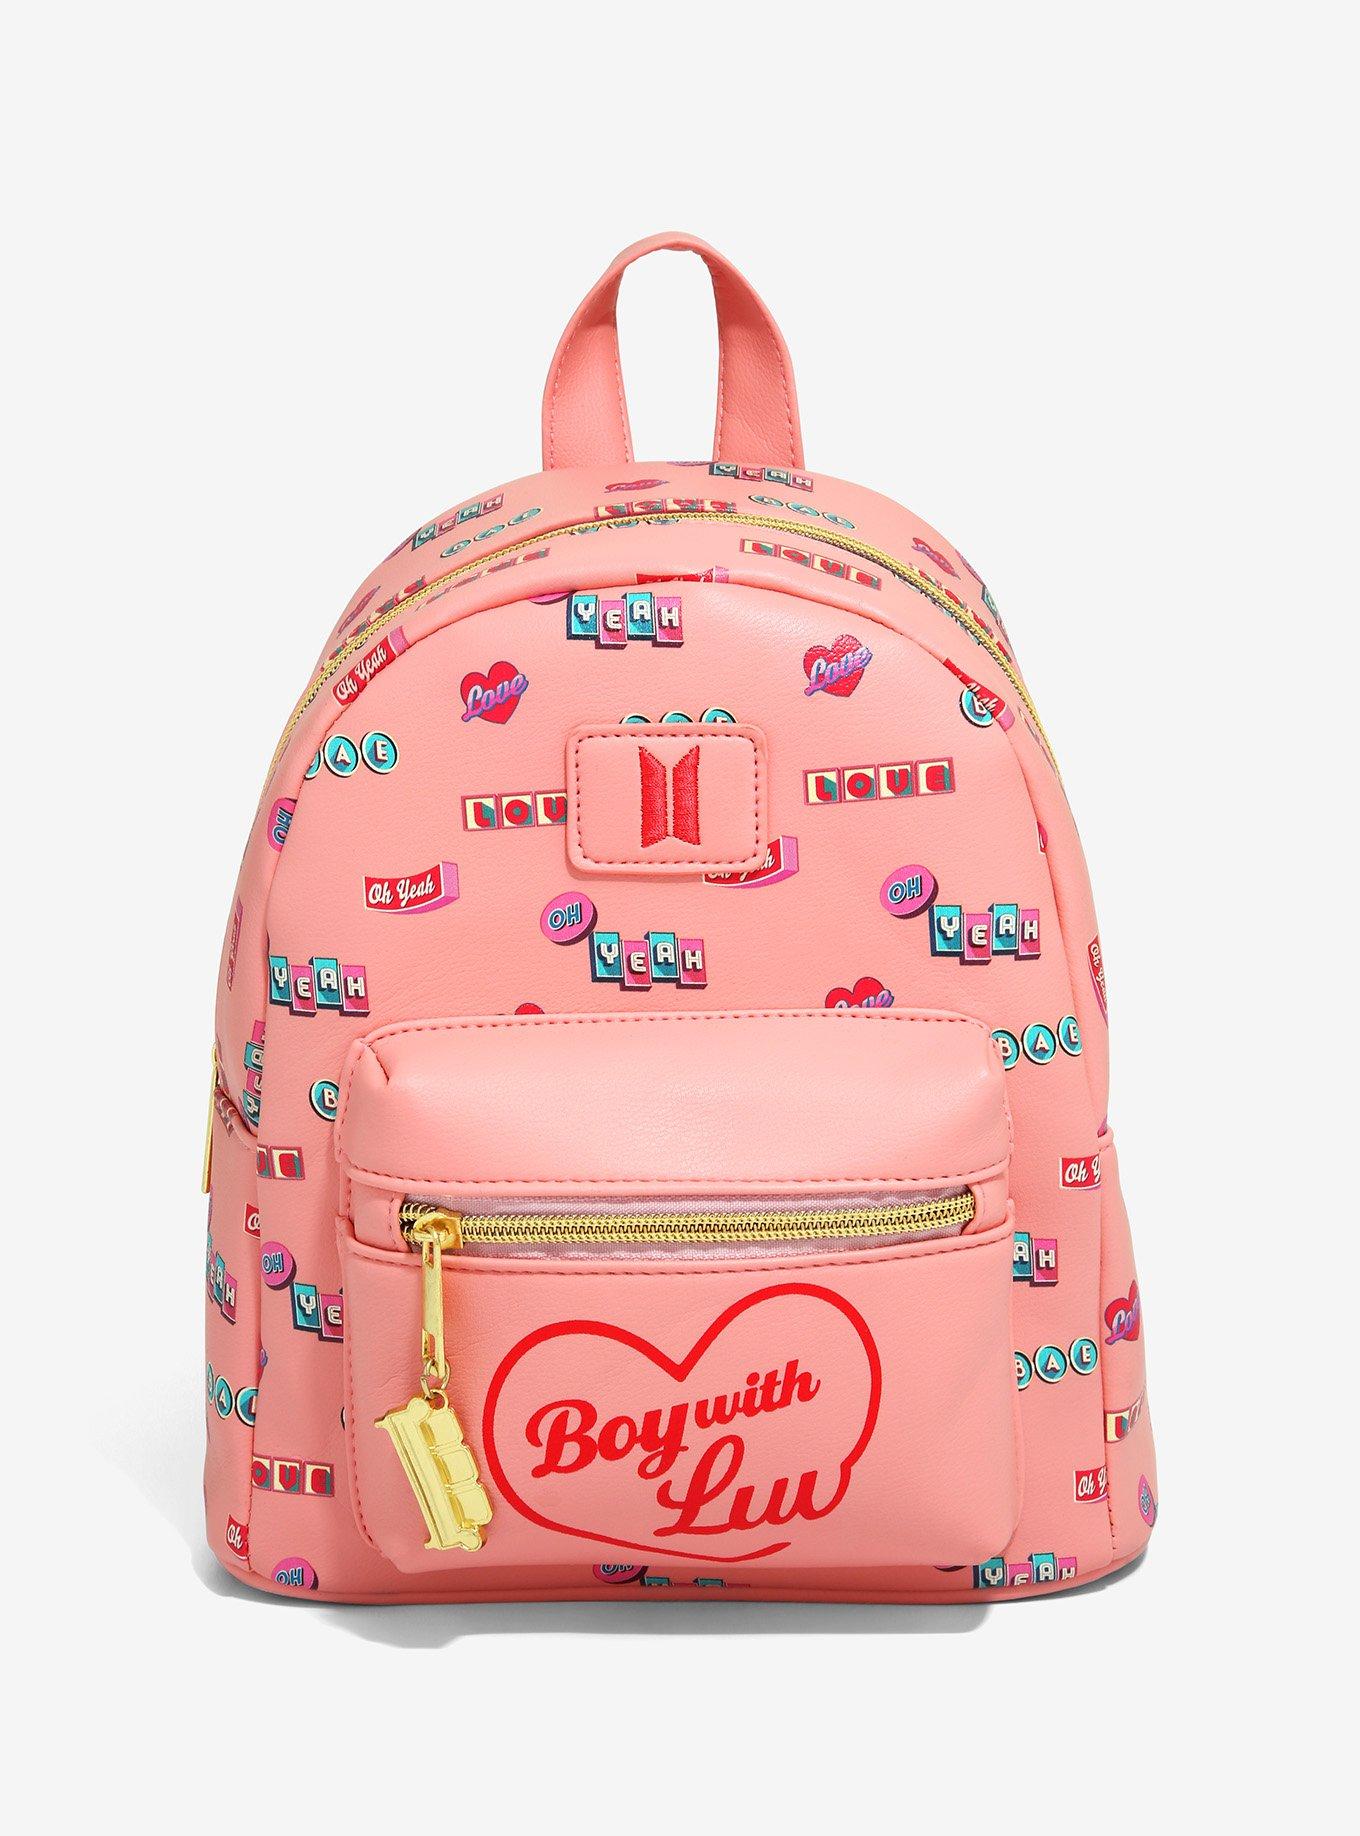 Bts School Bags